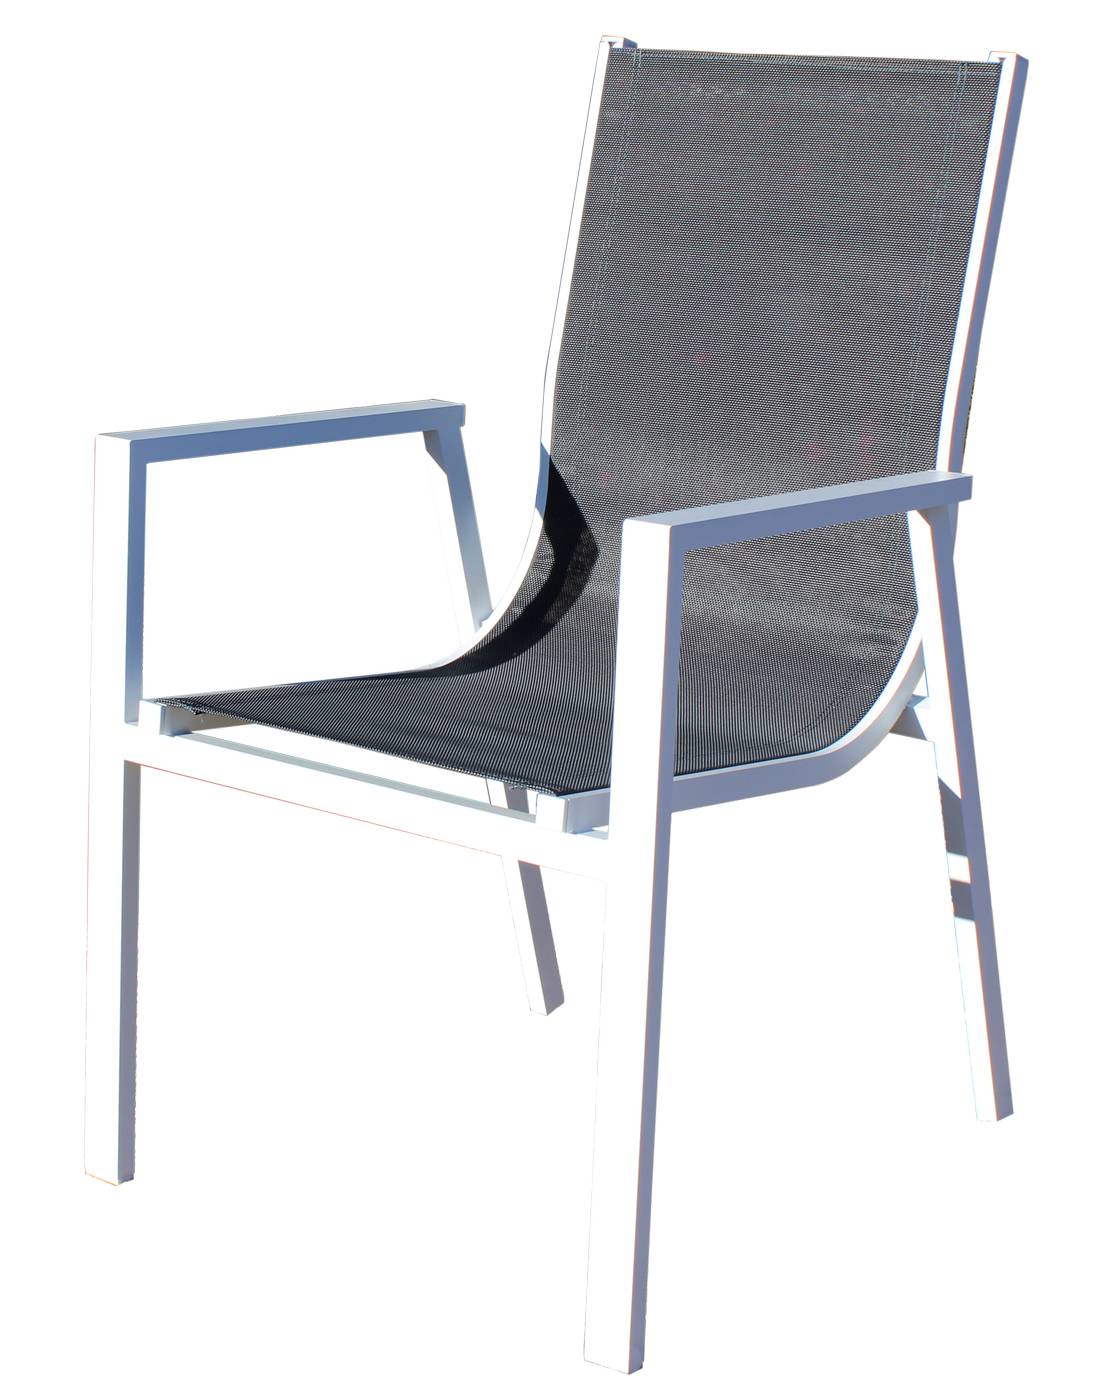 Sillón apilable de aluminio color blanco o antracita, con asiento y respaldo integrado de textilen